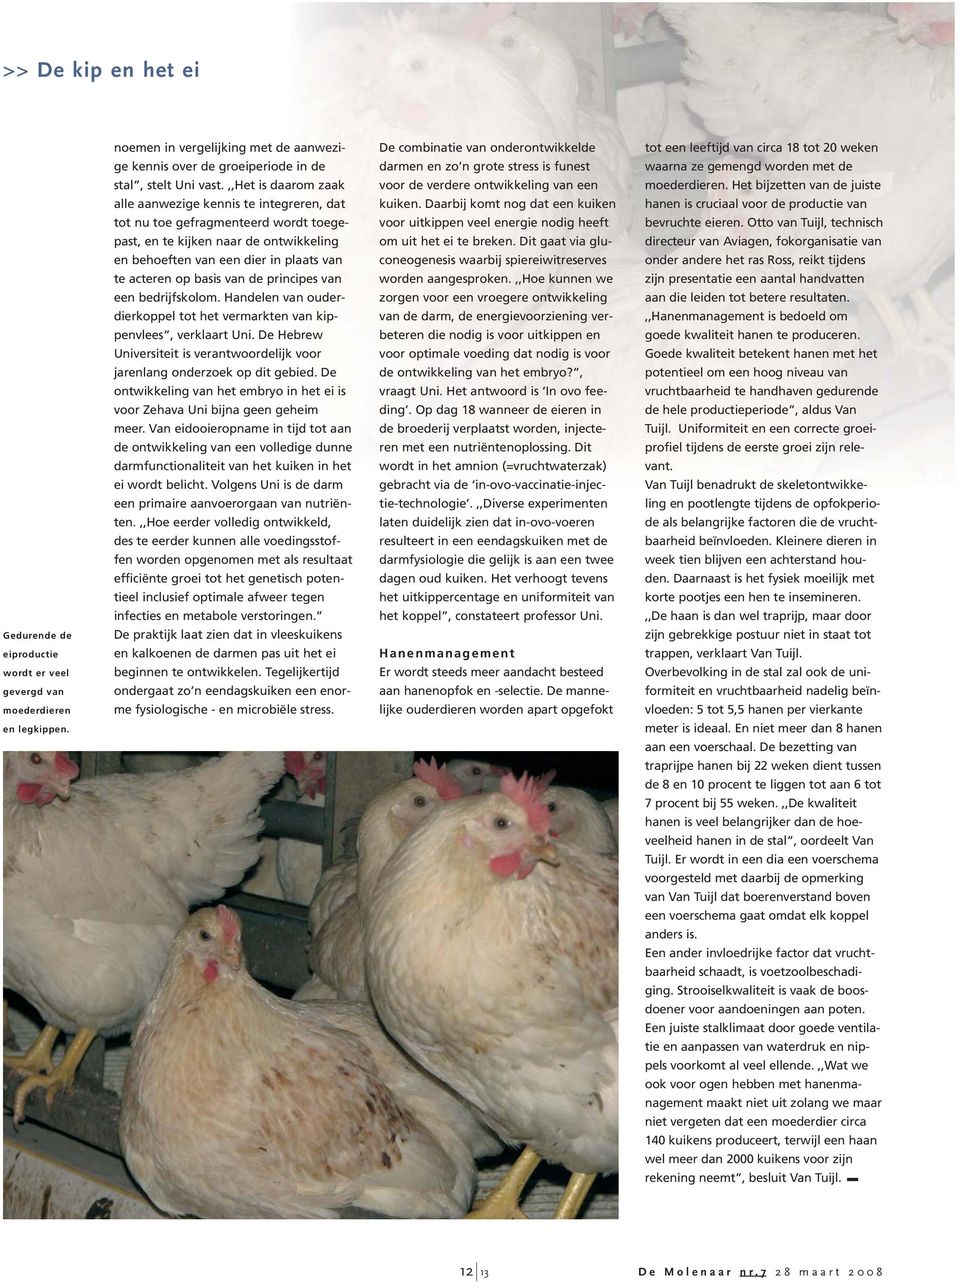 van de principes van een bedrijfskolom. Handelen van ouderdierkoppel tot het vermarkten van kippenvlees, verklaart Uni.